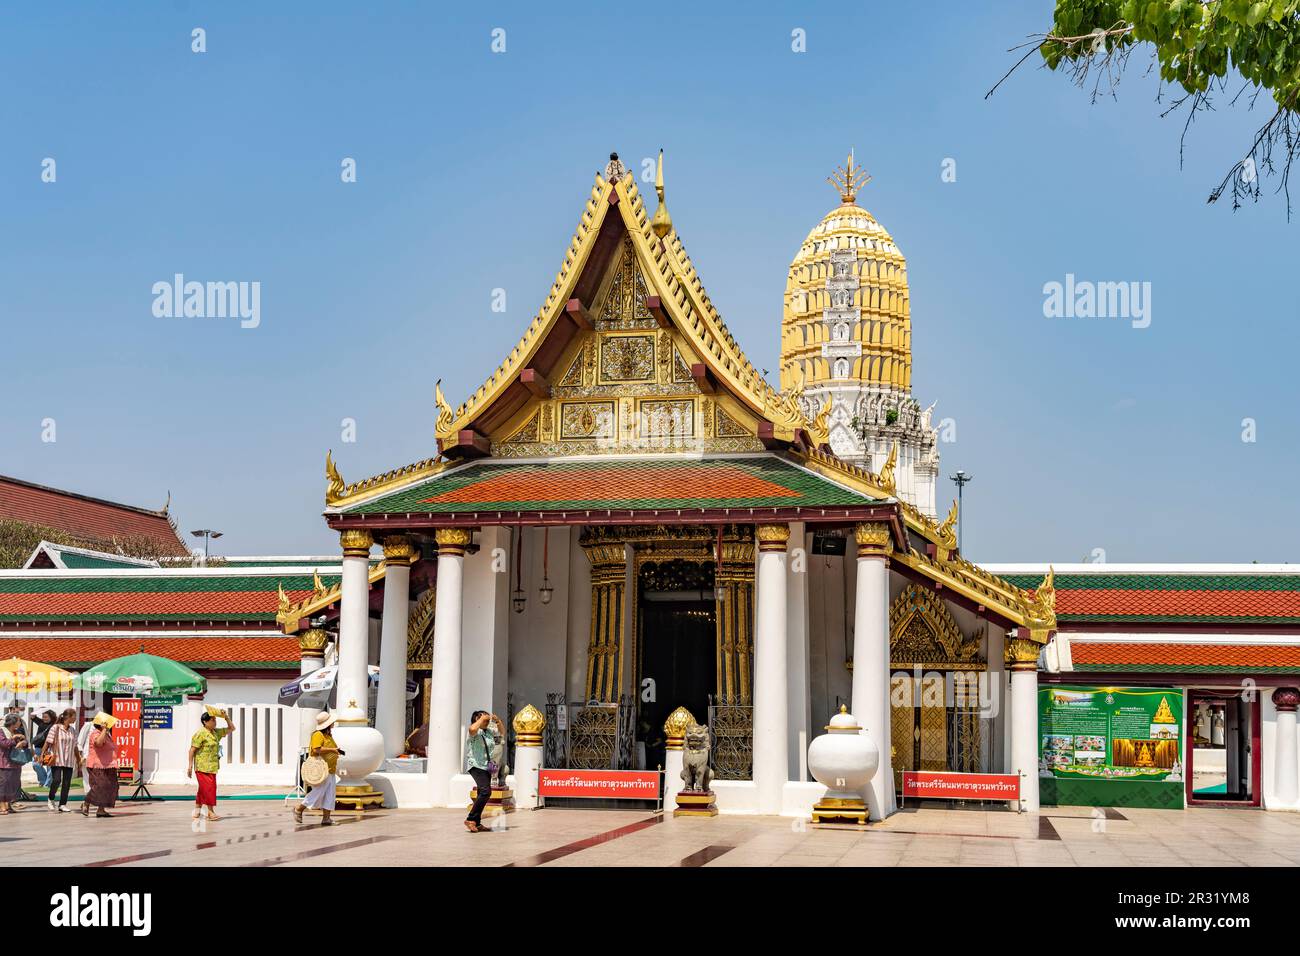 Der  buddhistische Tempel Wat Phra Si Rattana Mahathat in Phitsanulok, Thailand, Asien  |  Wat Phra Si Rattana Mahathat  buddhist temple in Phitsanulo Stock Photo